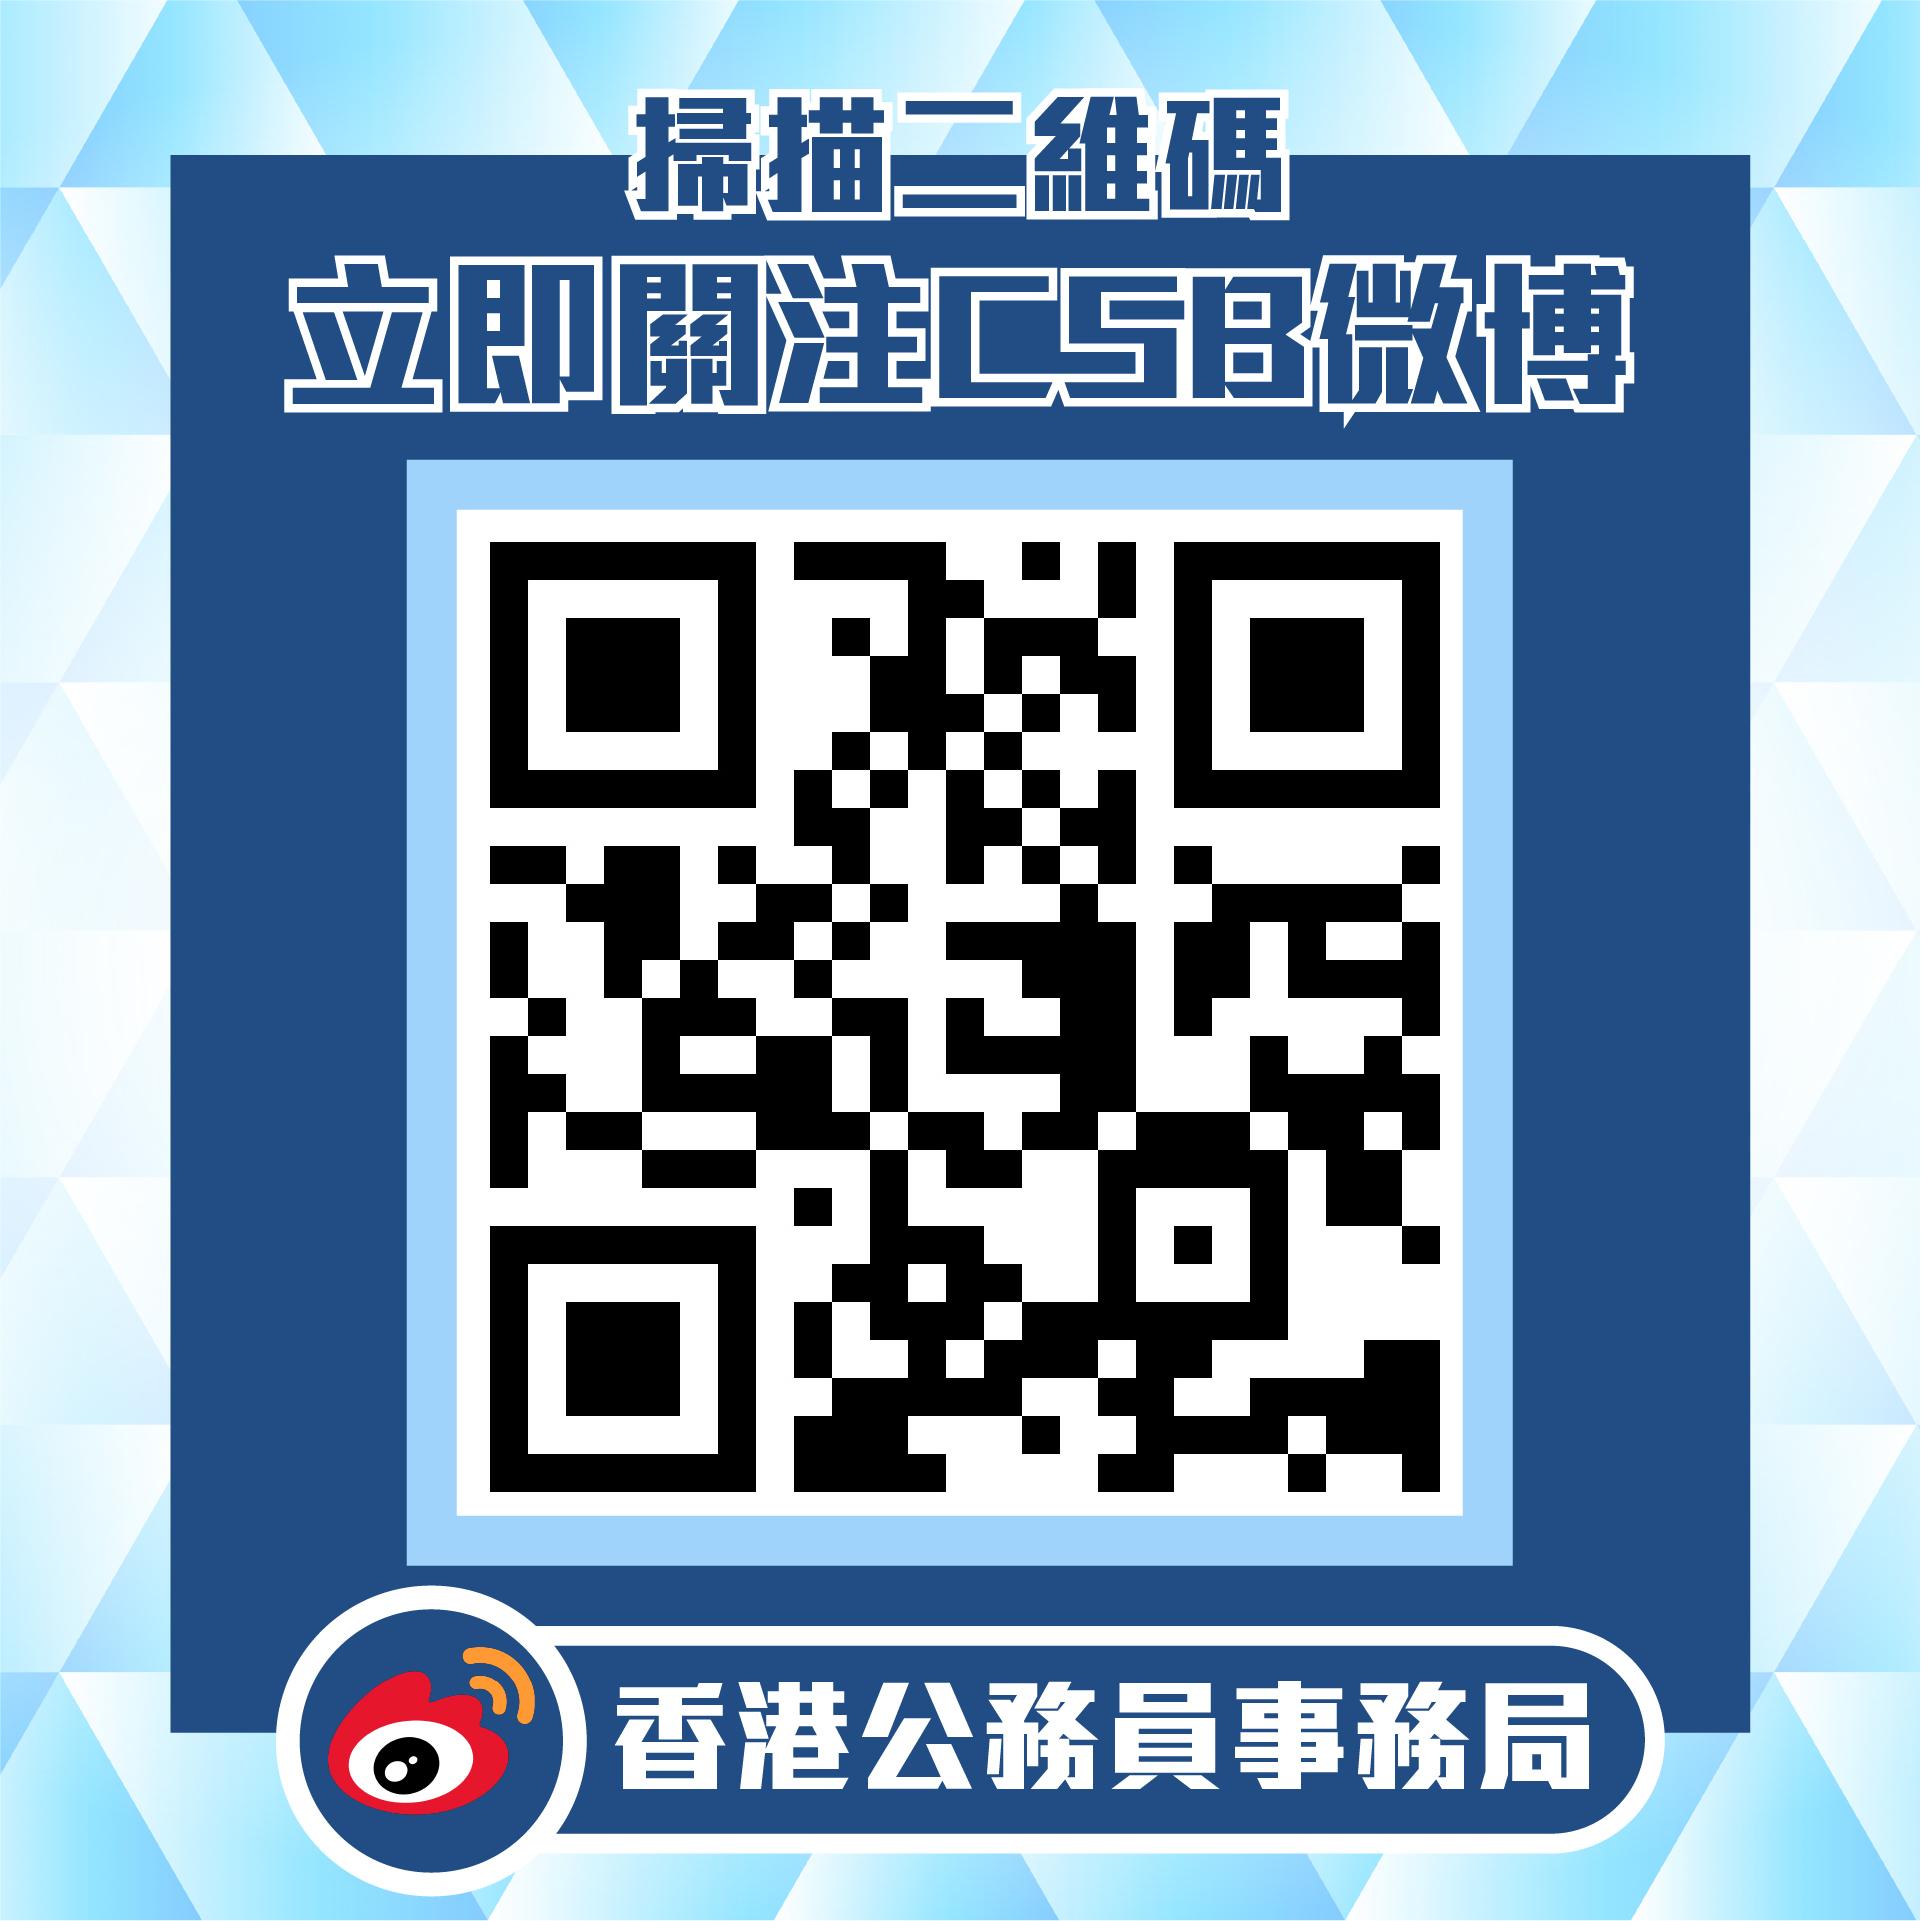 公務員事務局微博官方帳號今日（十月一日）正式啓用。圖示「香港公務員事務局」微博官方帳號的二維碼。